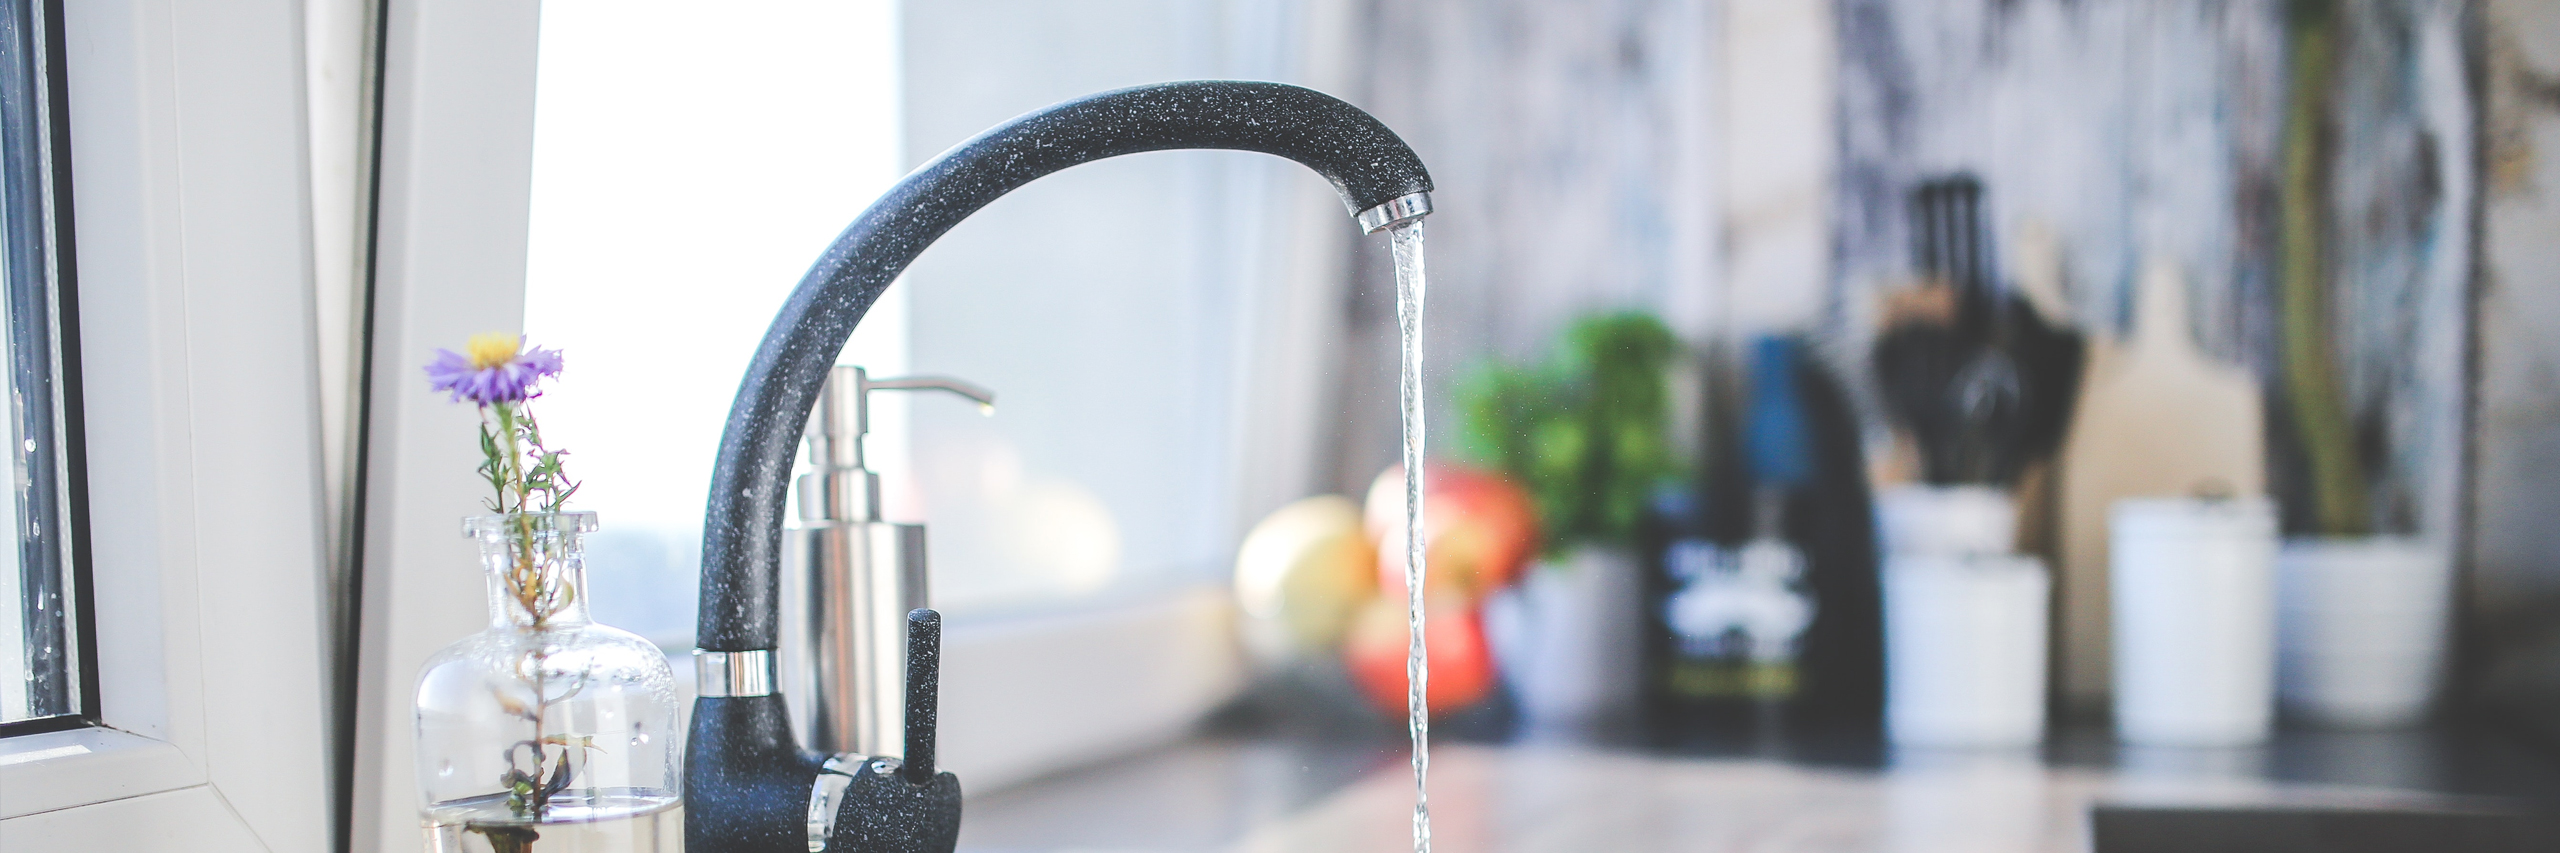 Water faucet tap